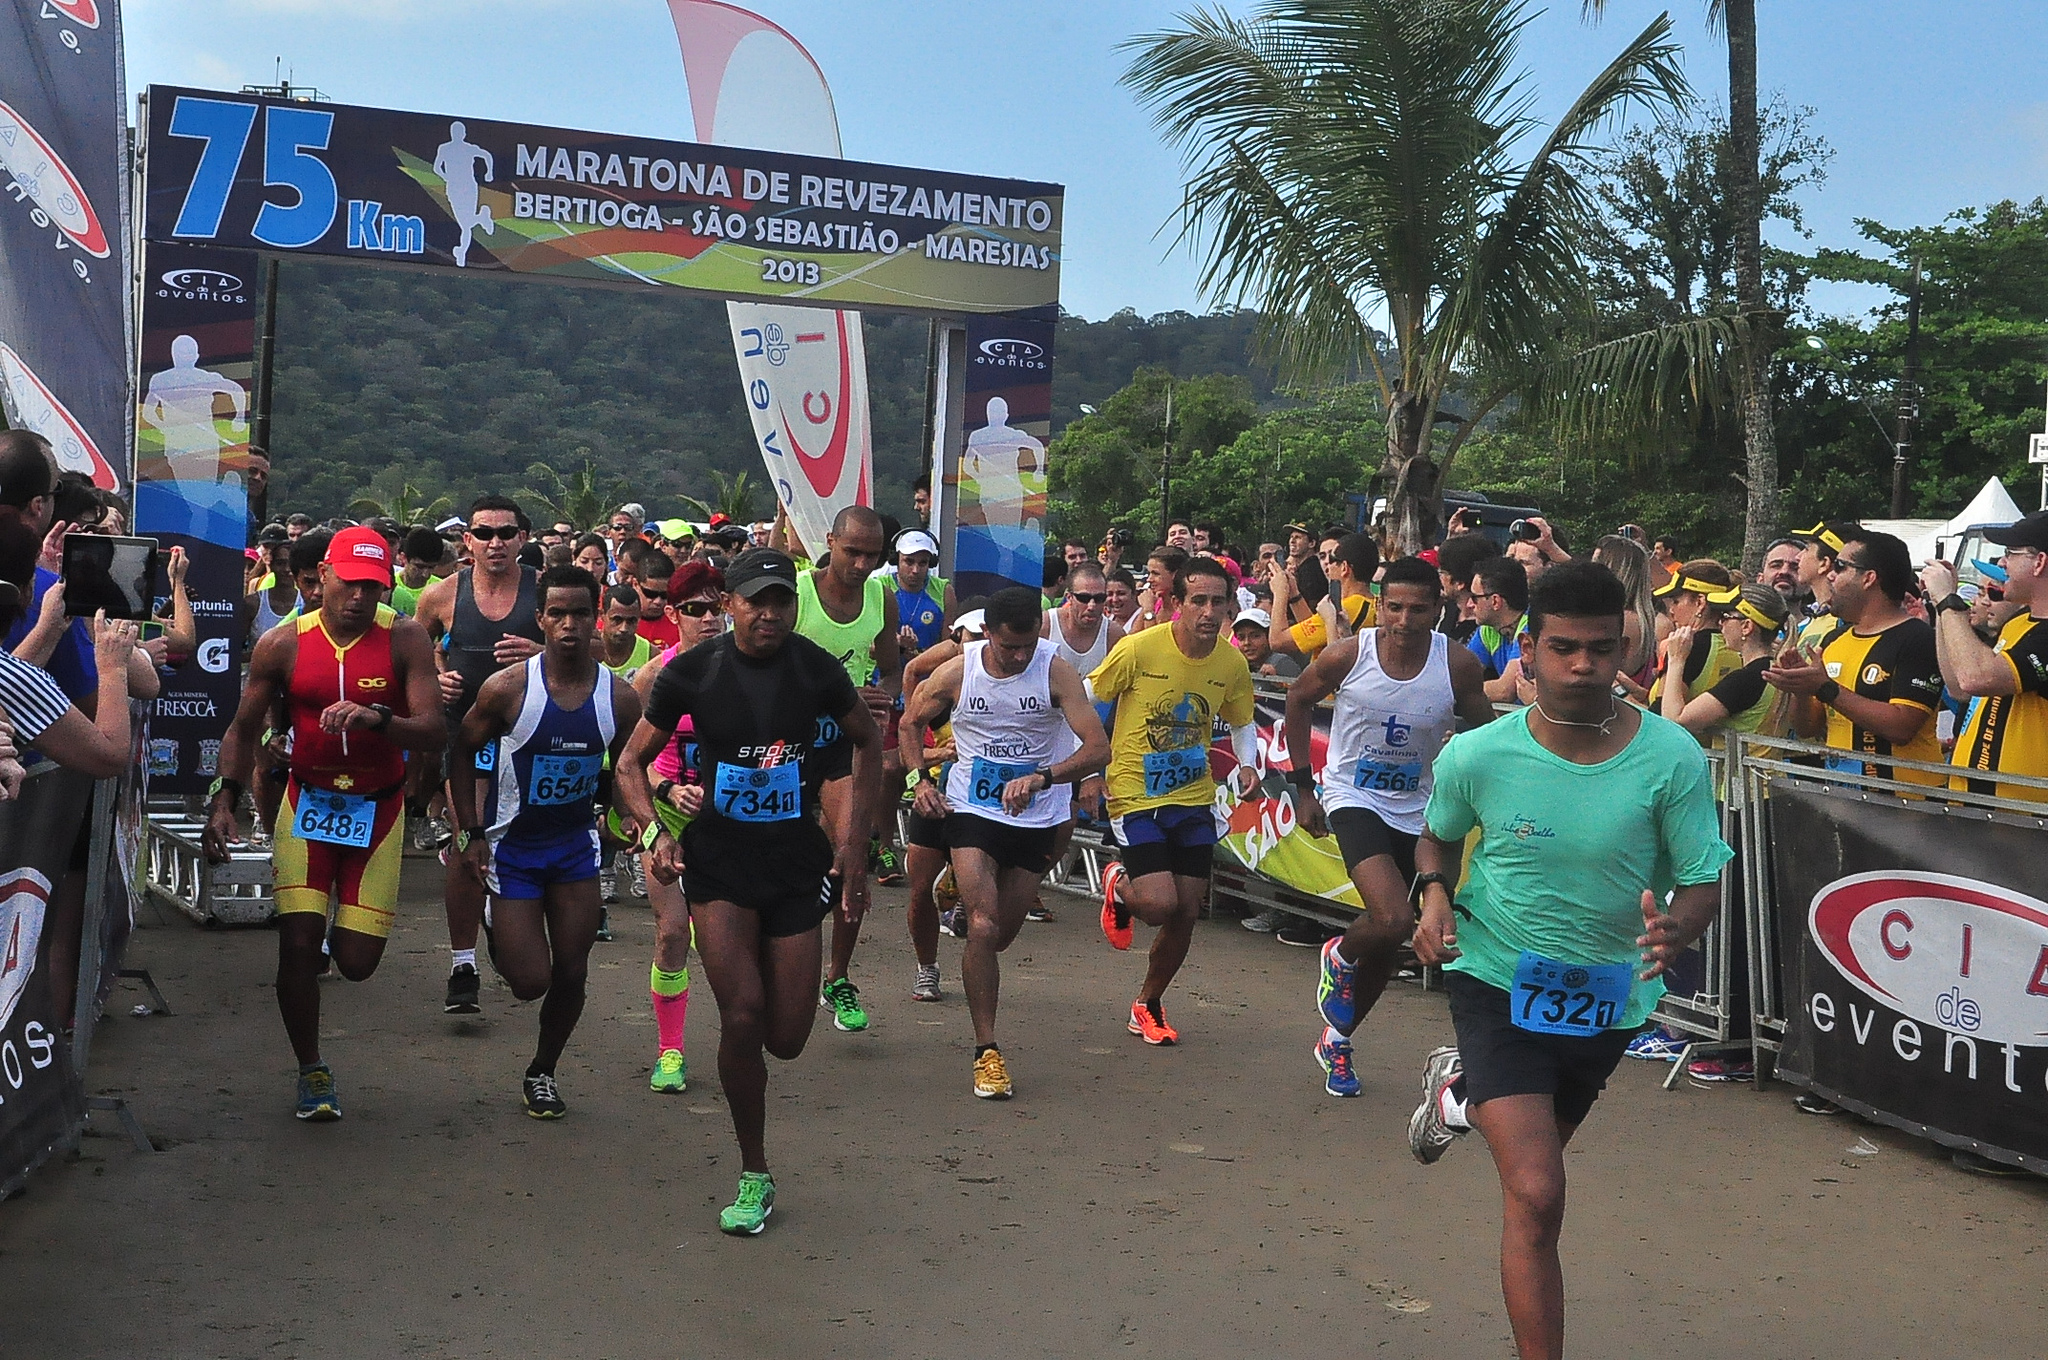 Cidade recebe Maratona Bertioga-Maresias neste sábado (18)